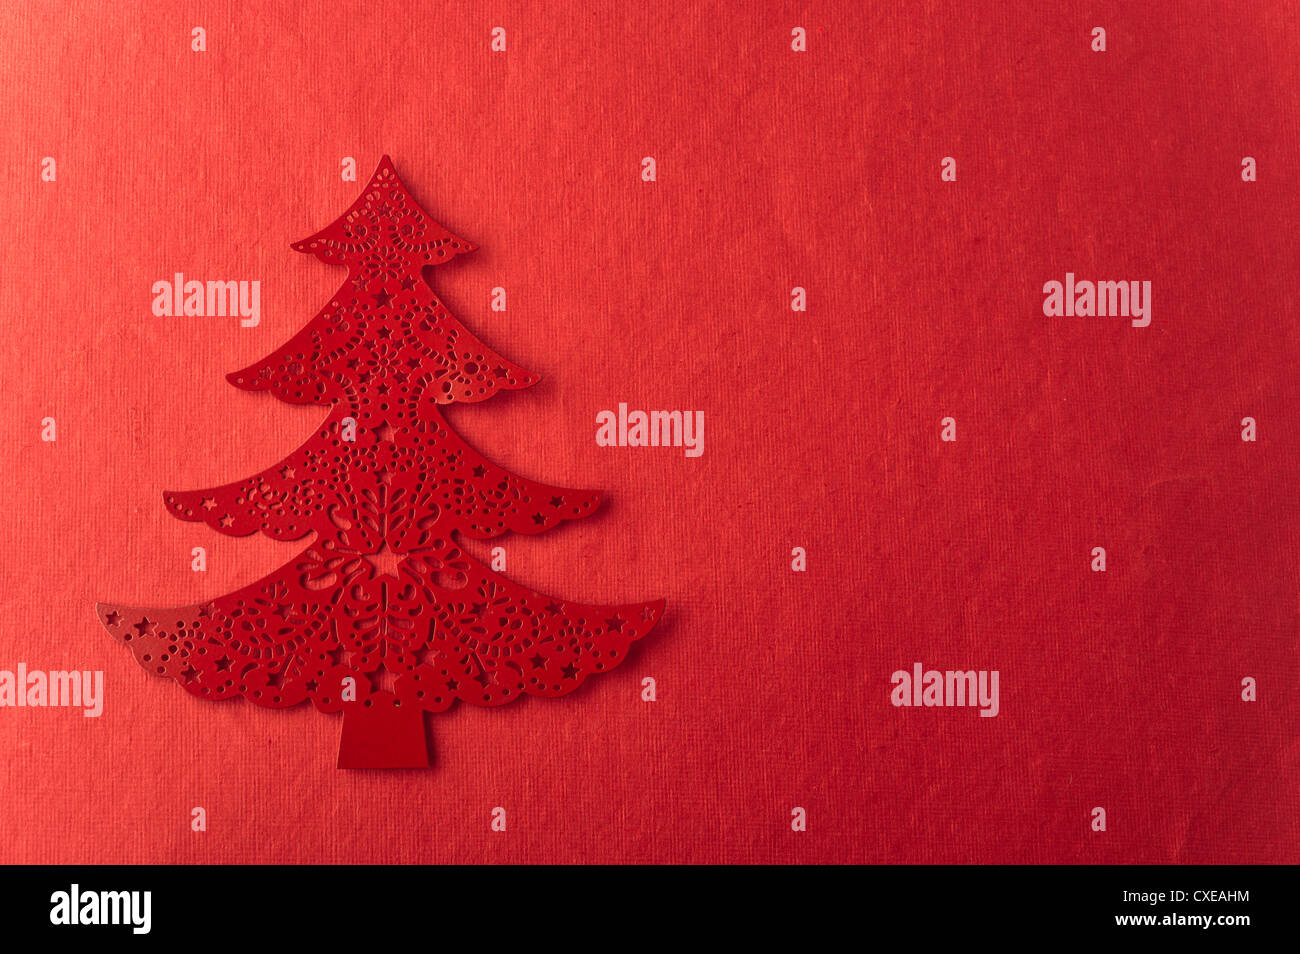 Weihnachtsbaum-Form auf rotem Grund Stockfoto